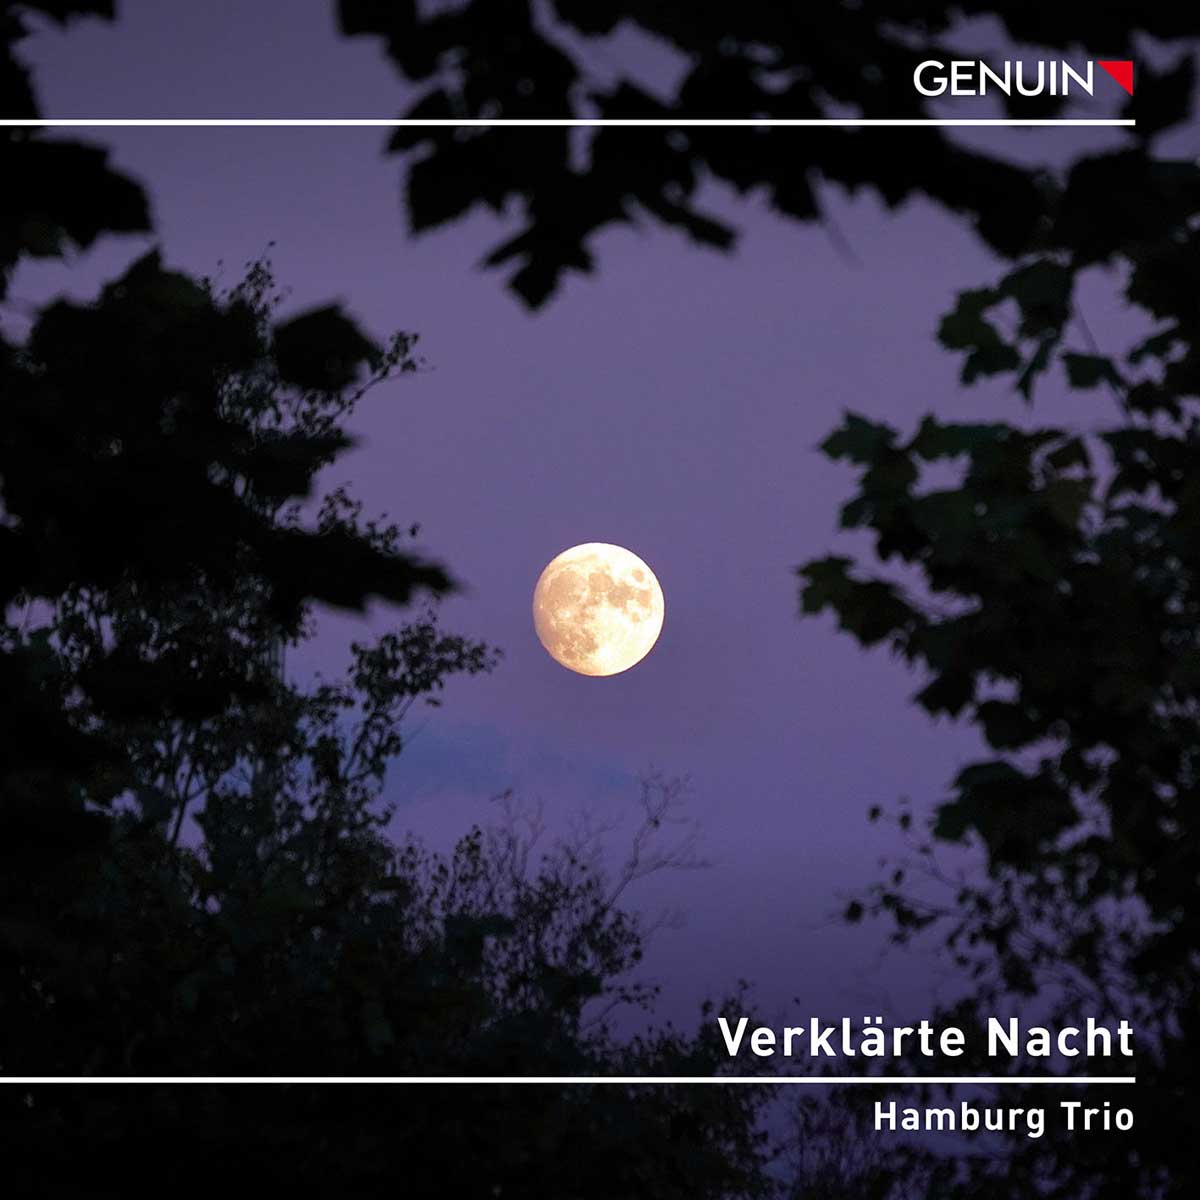 CD album cover 'Verkl�rte Nacht' (GEN 23812) with Hamburg Trio